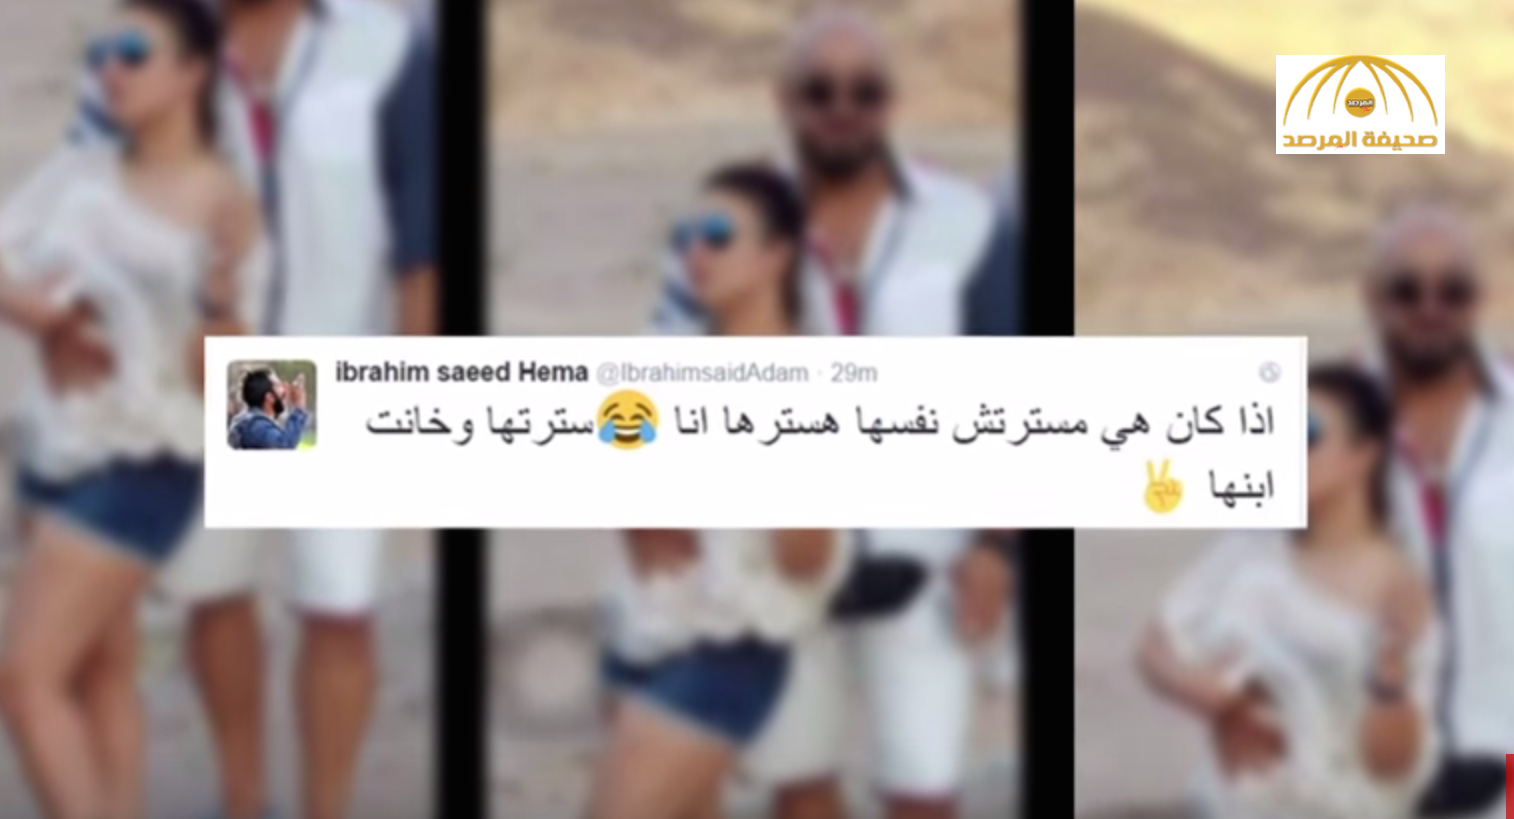 لاعب مصري "شهير" يتهم زوجته بالخيانة وينشر صورتها في أحضان رجل آخر-فيديو